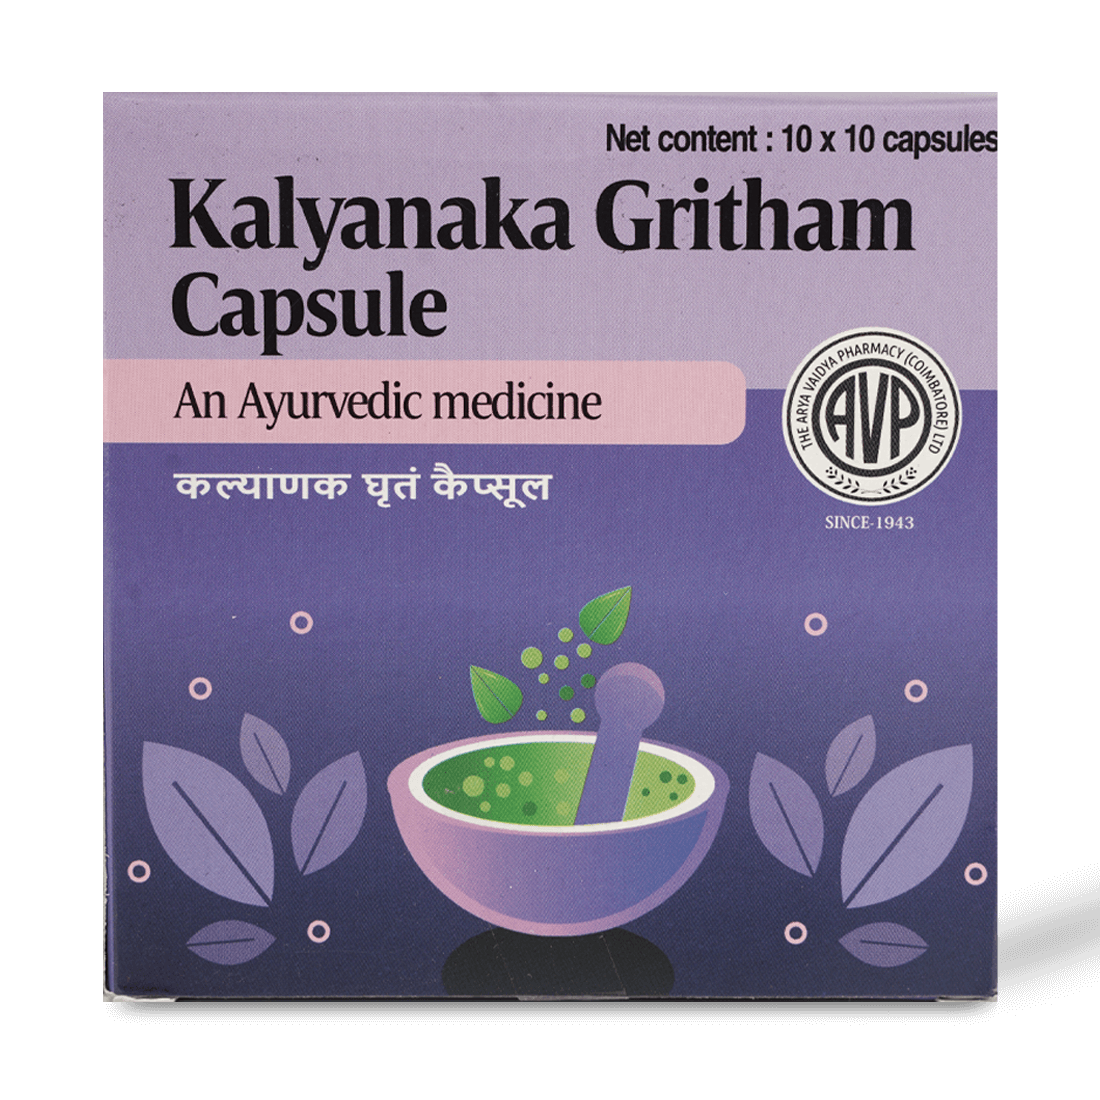 Kalyanaka Gritham Capsule